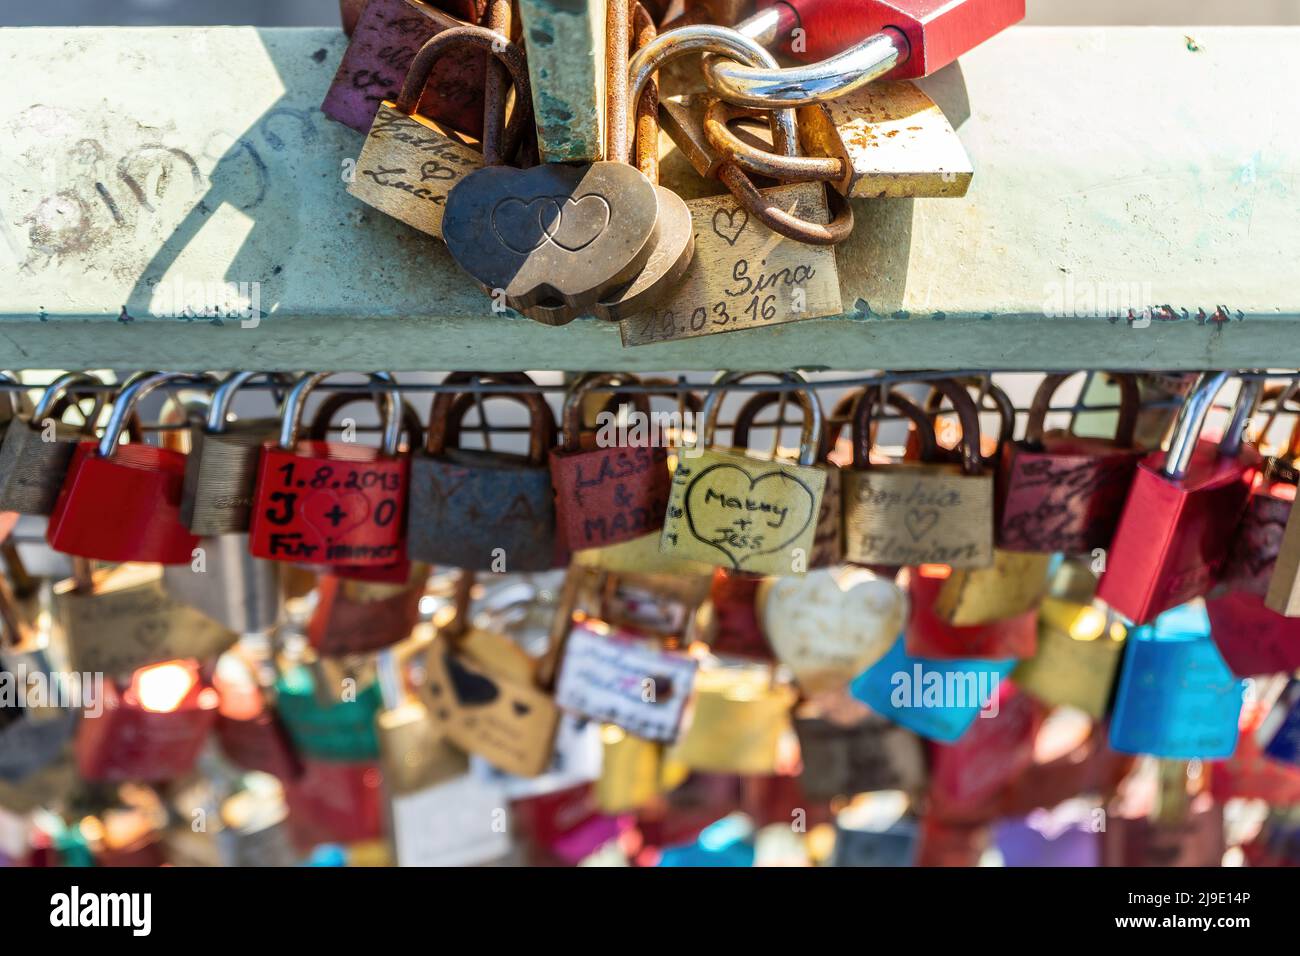 Landungsbrücken, Hambourg, Allemagne, 29 sept. 2018: L'amour se verrouille en partie avec le coeur et la forme du coeur sur un pont balustrade. Banque D'Images